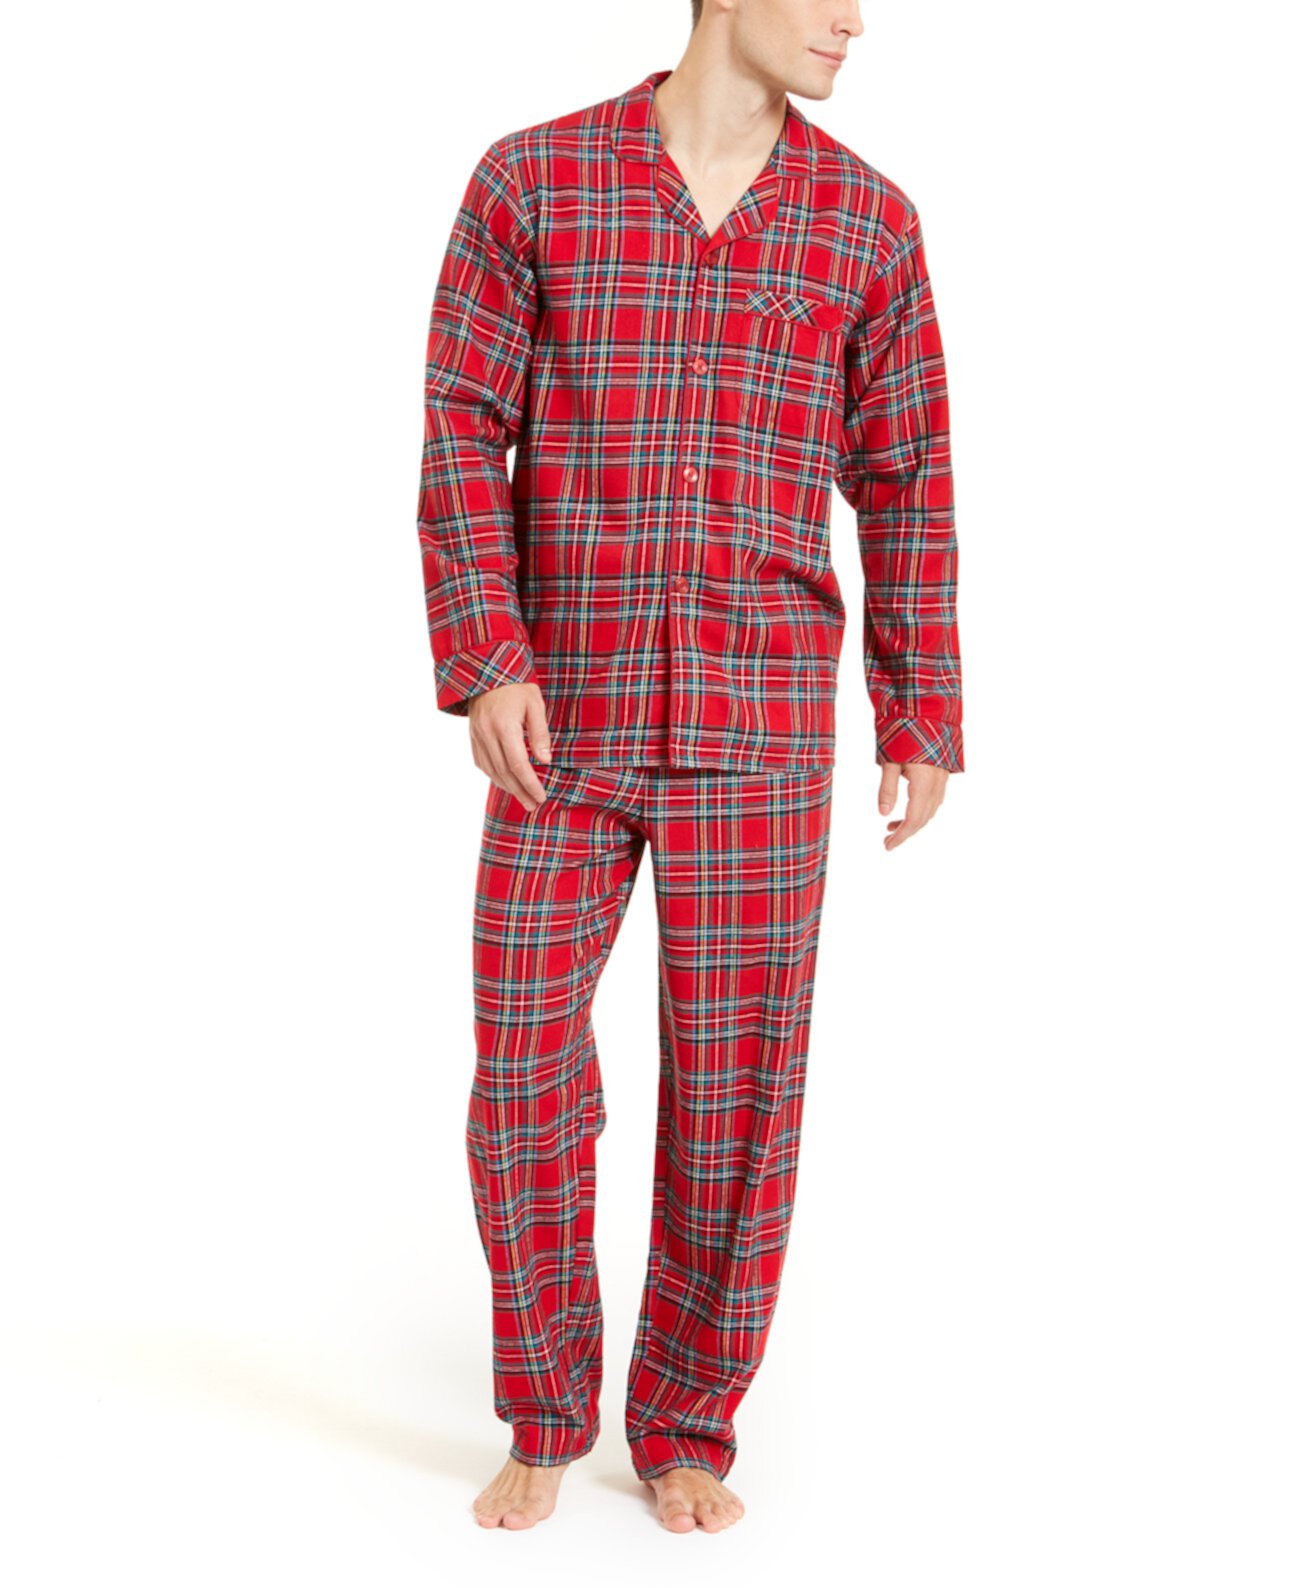 Соответствующий большой и высокий семейный пижамный комплект Brinkley Plaid, созданный для Macy's Family Pajamas